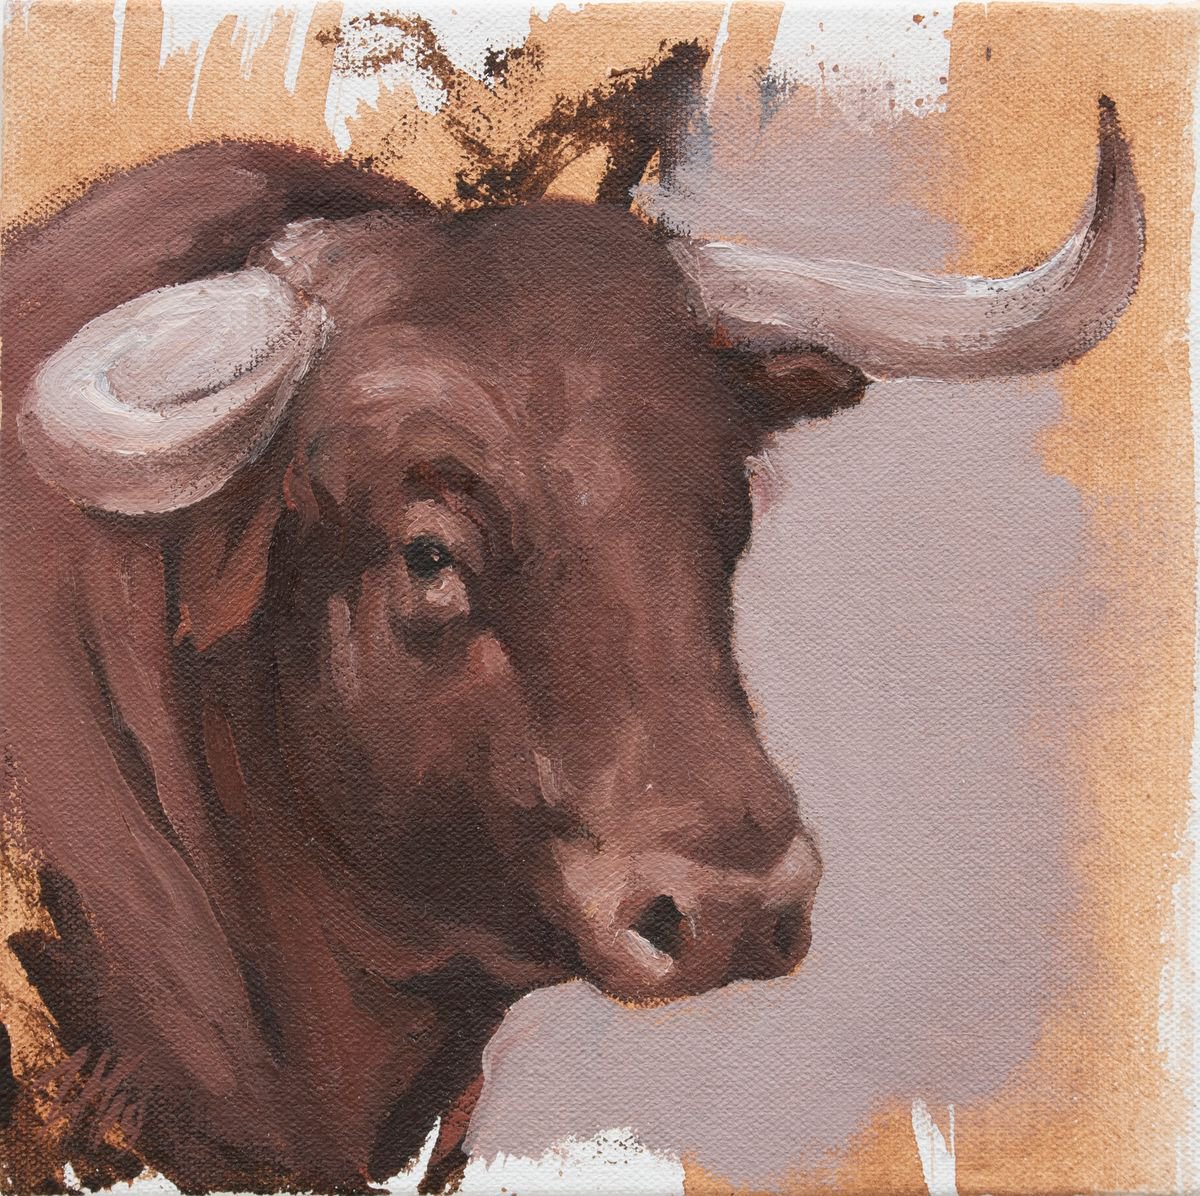 Toro Head Colorado (study 22) by Zil Hoque